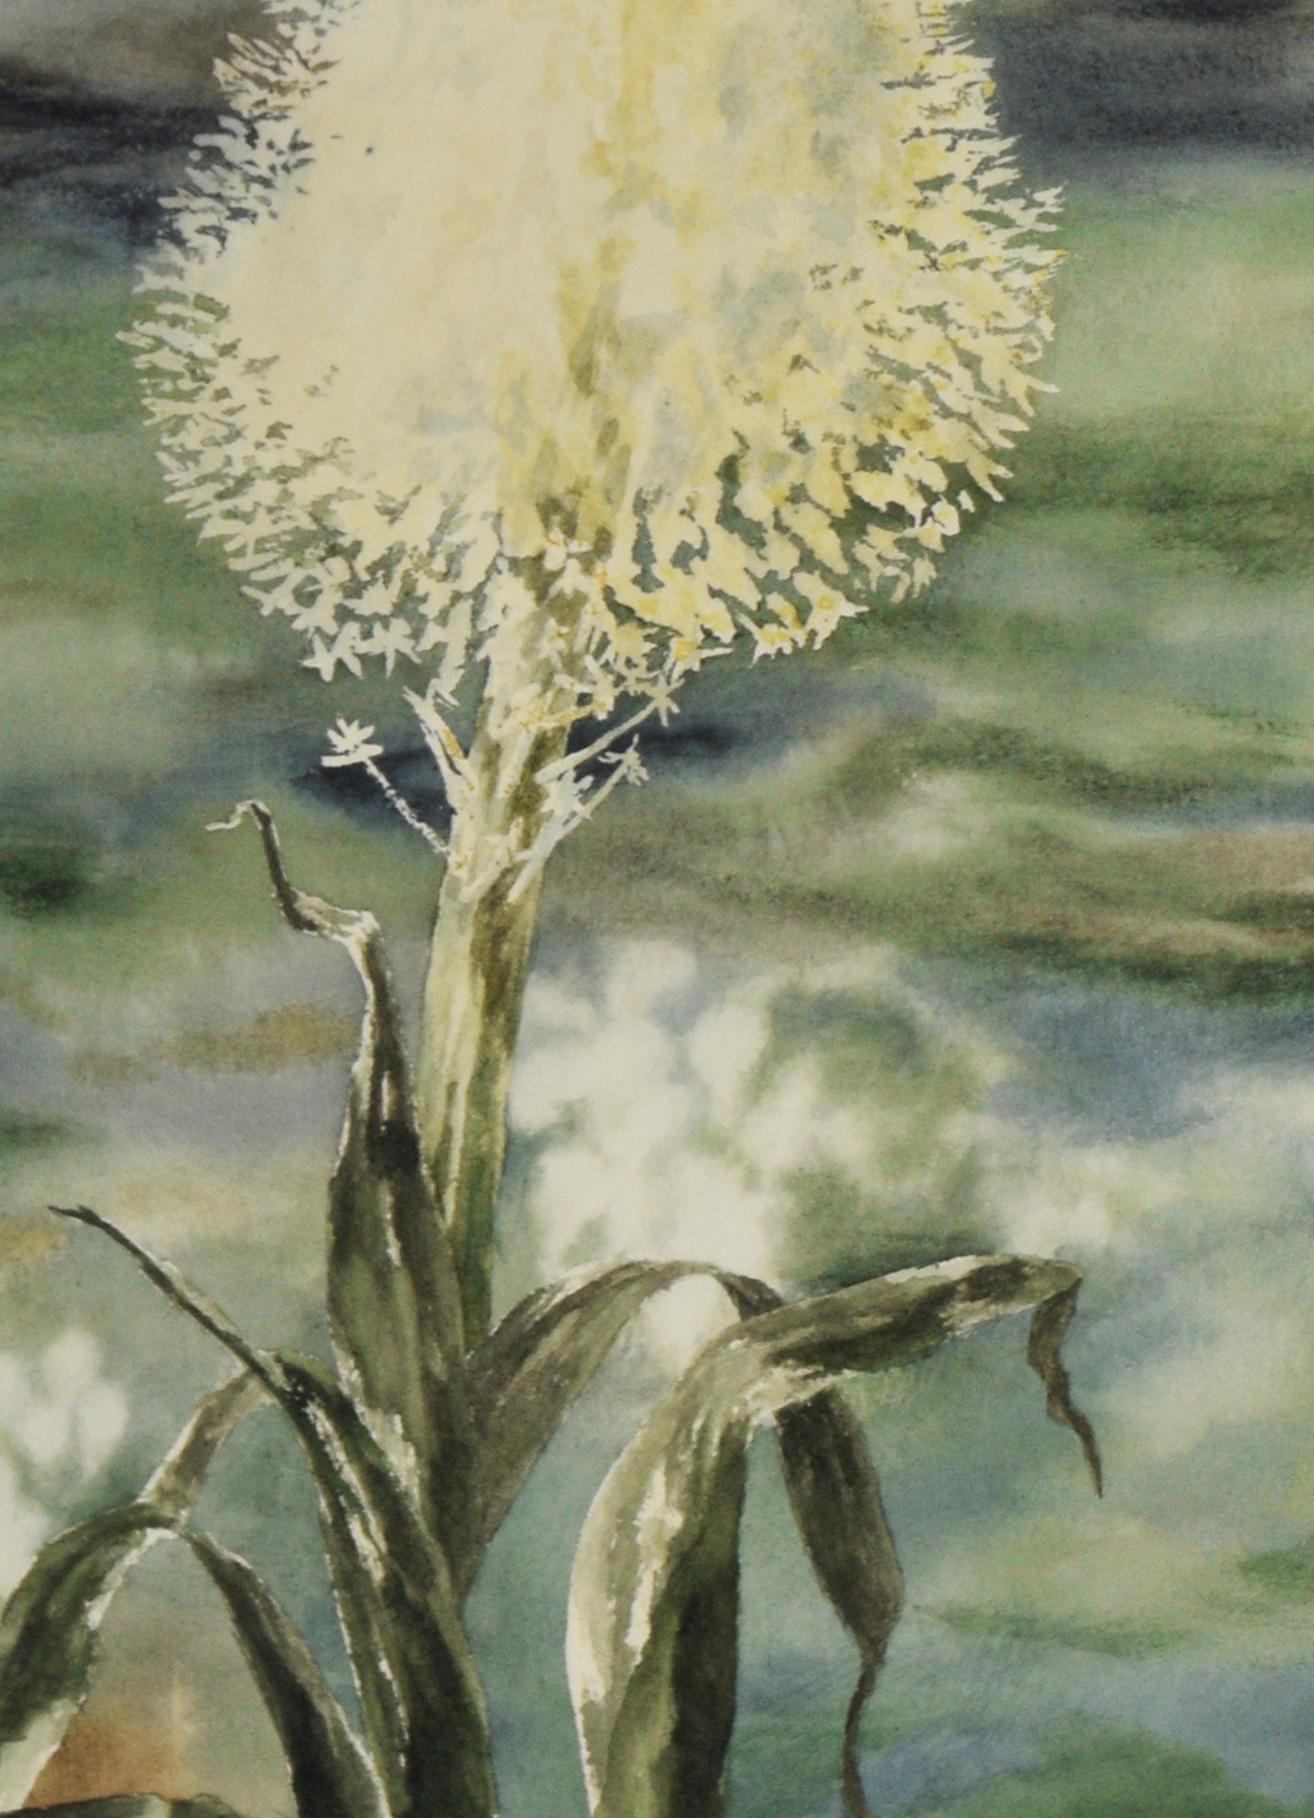 Bärengras - Original Aquarell auf Papier

Original-Aquarell von Marie Yunker (Amerikanerin, 20. Jh.), das Bärgras, auch bekannt als Pferdeschwanz, darstellt. Grün- und Blautöne nehmen den Hintergrund ein, während das Bärgras im Mittelpunkt steht.